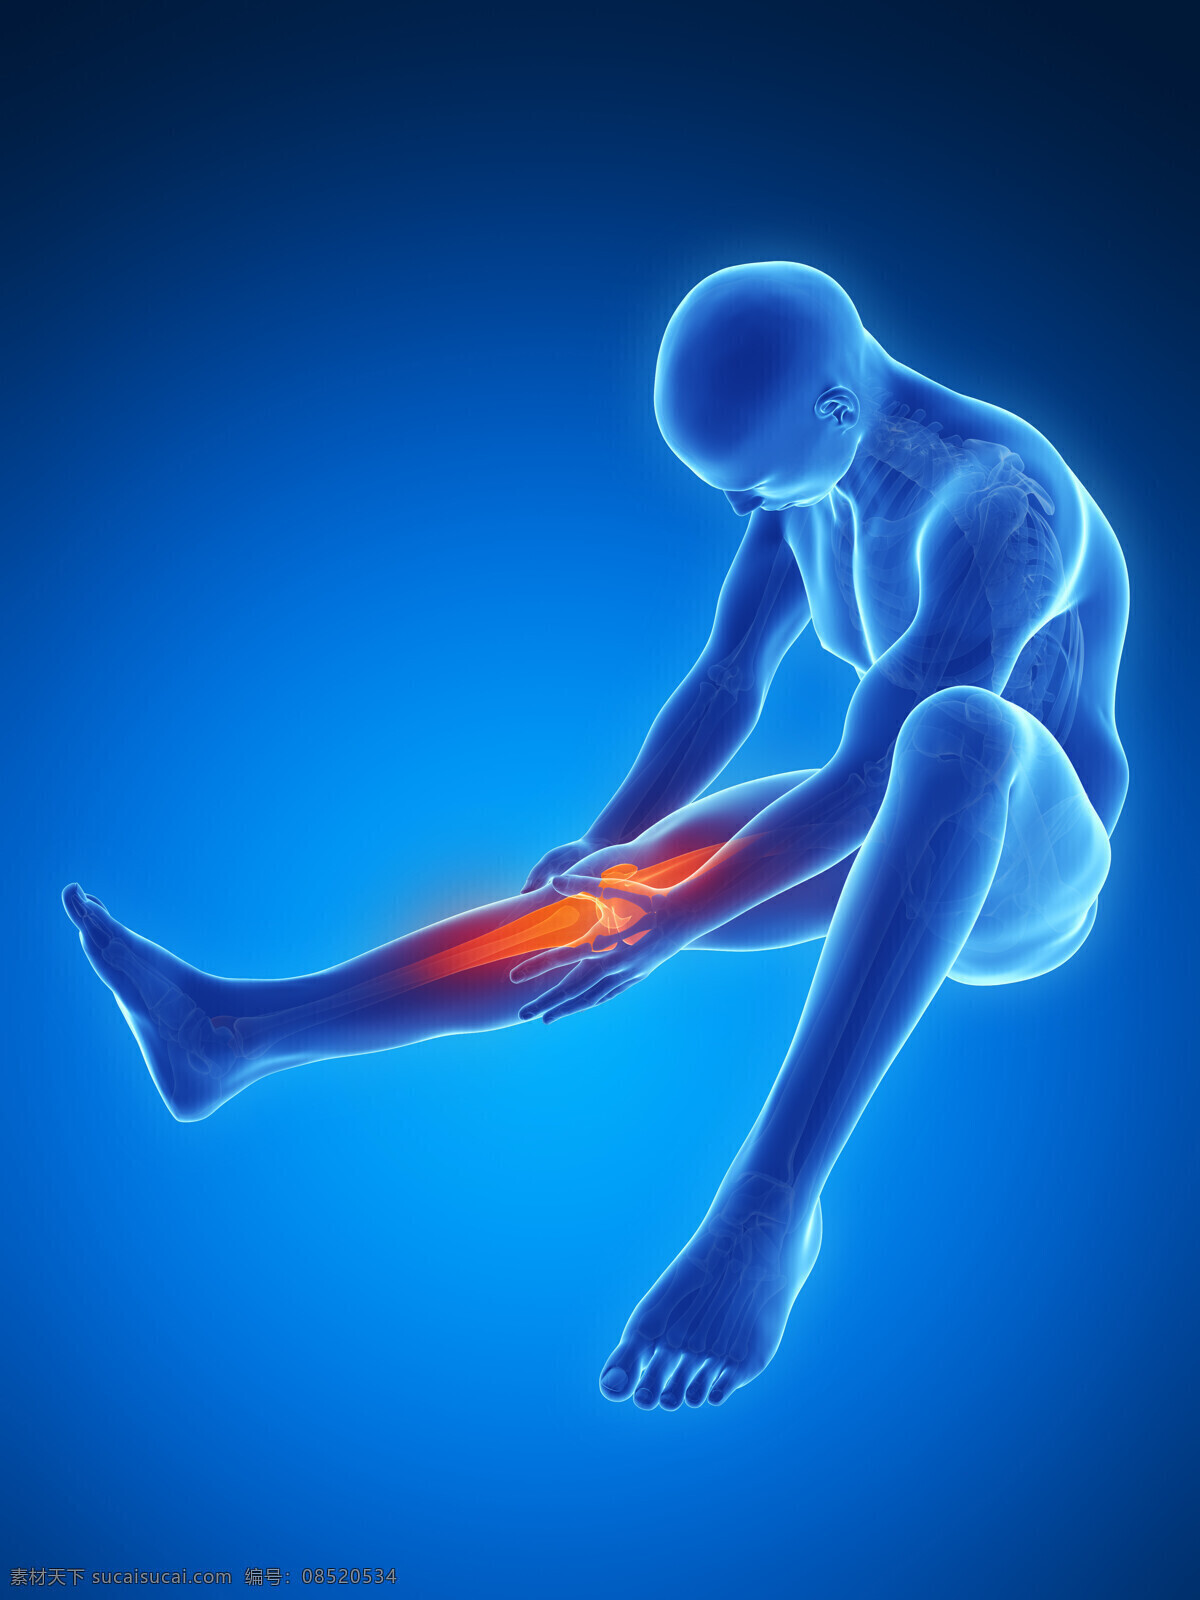 膝关节 疼痛 膝关节疼痛 关节炎 关节痛 人体器官 医学图片 医疗护理 现代科技